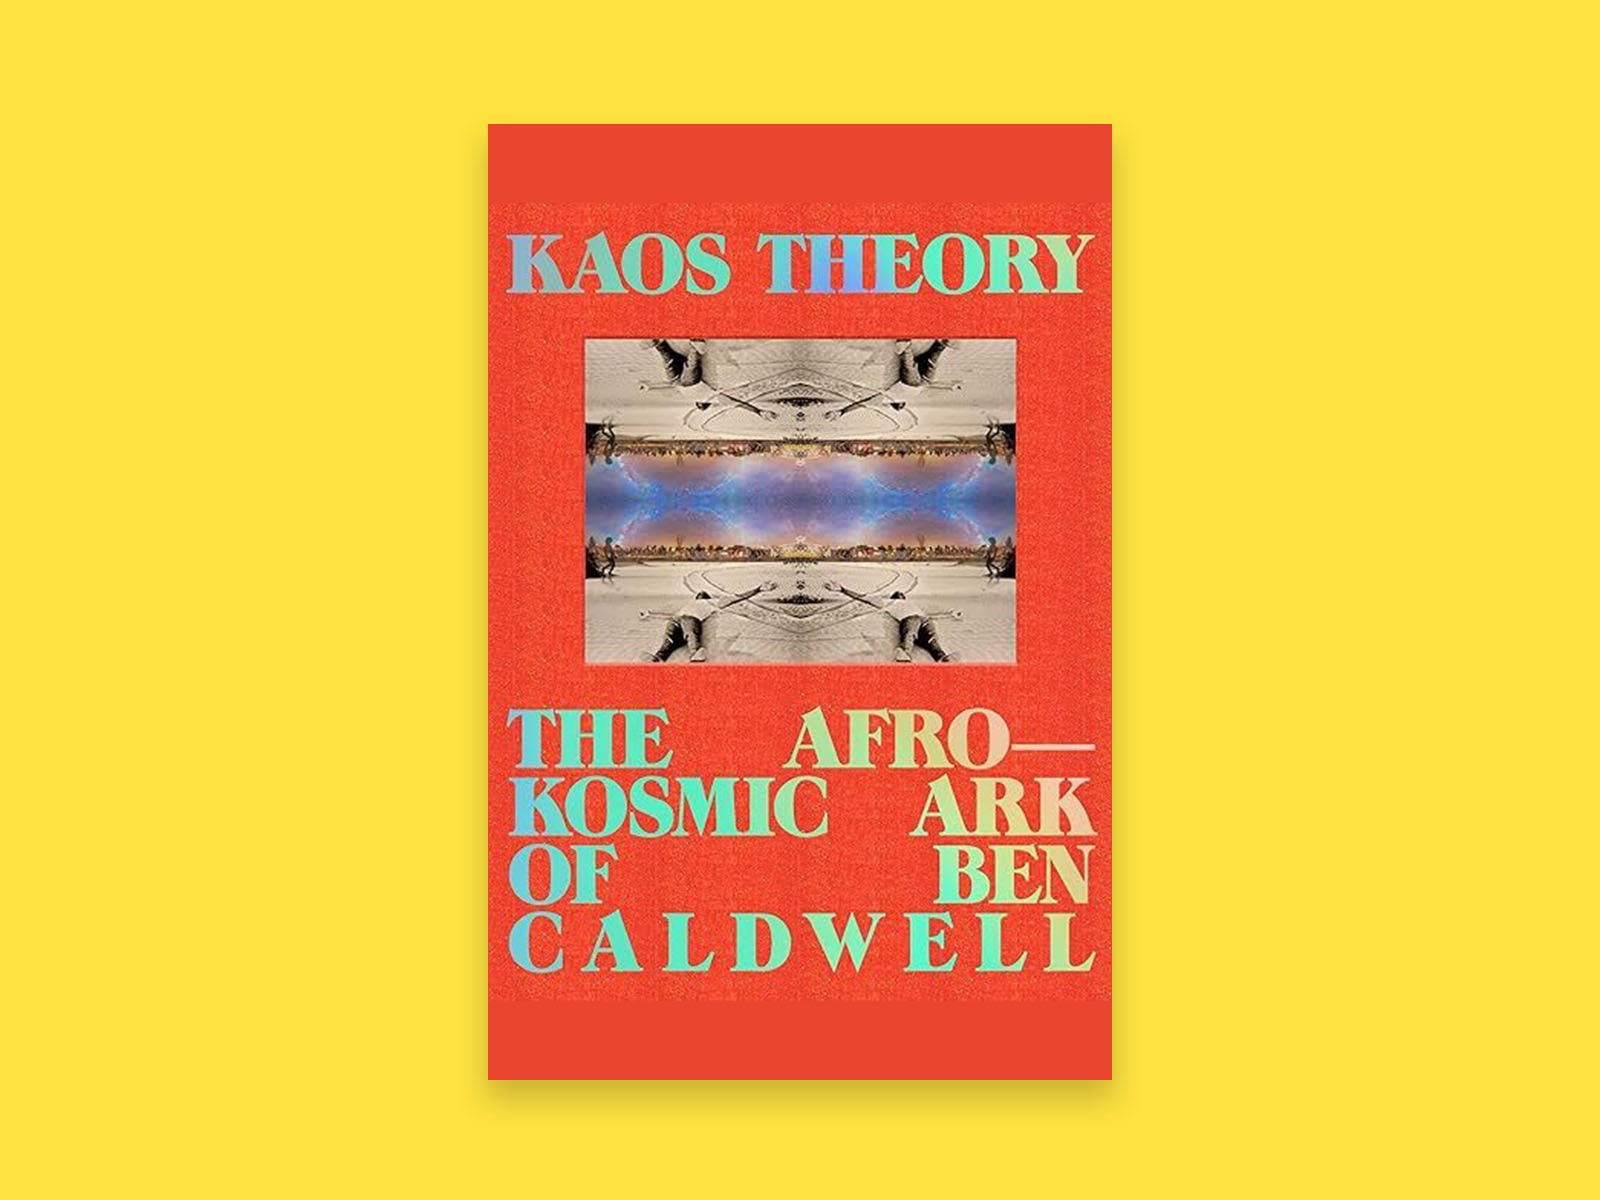 Okładka książki „Teoria KAOS” na żółtym tle.